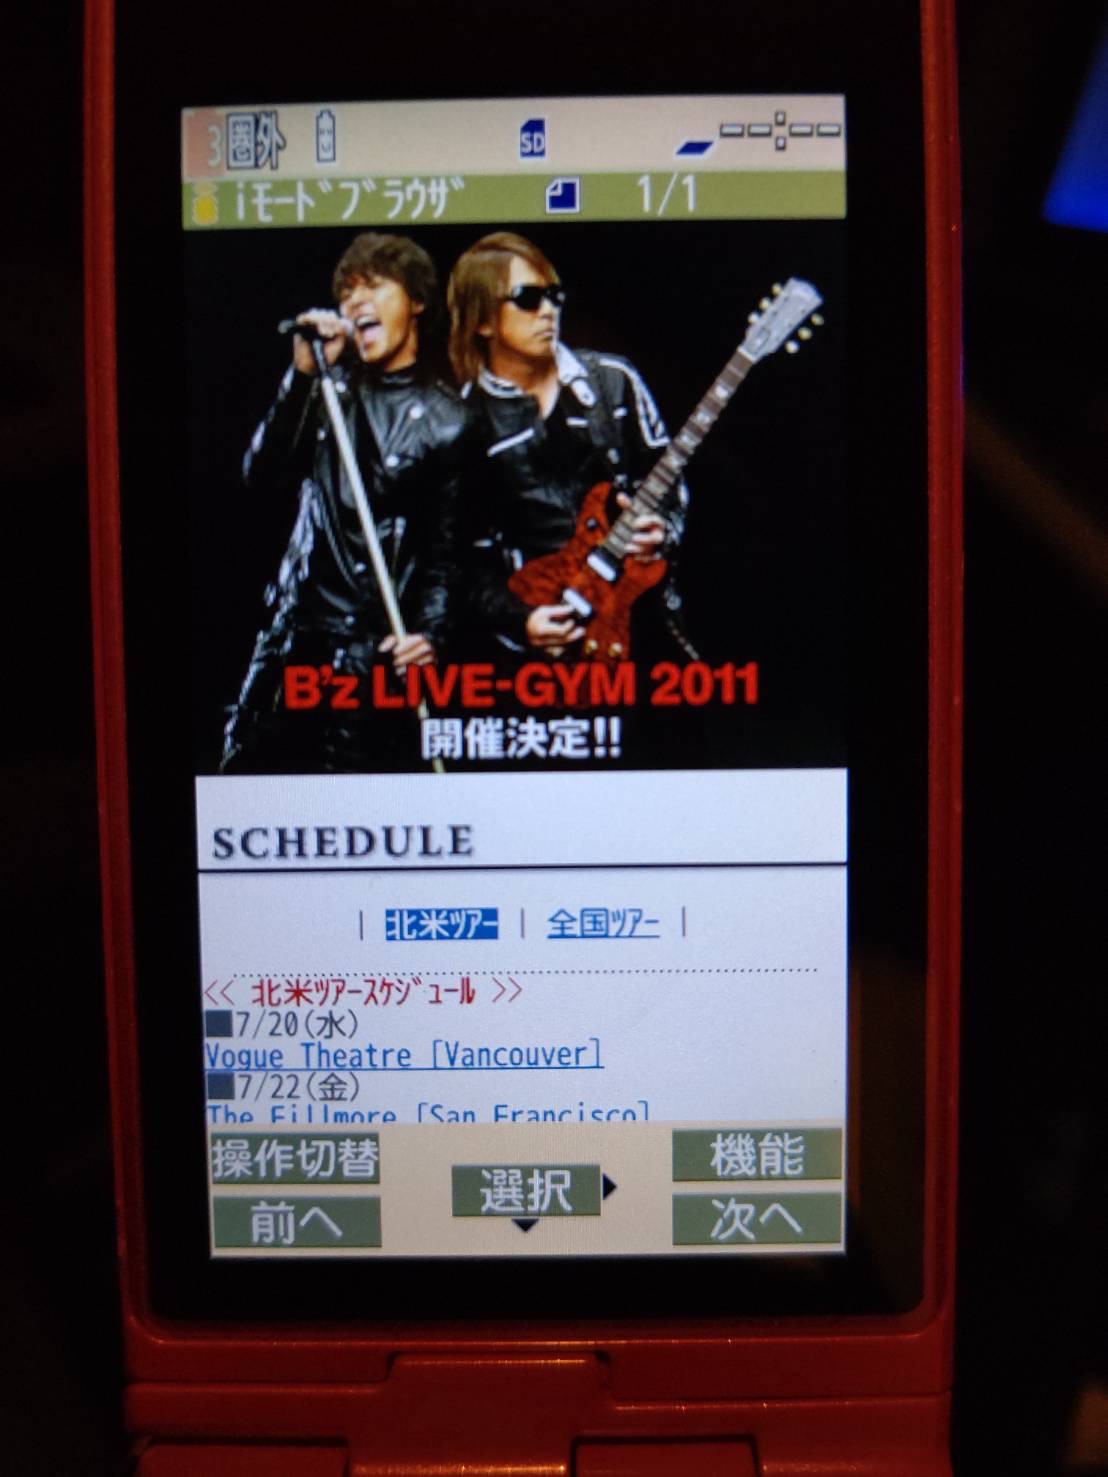 「B'z LIVE-GYM 2011」開催決定ニュースをガラケーで表示している様子の画像